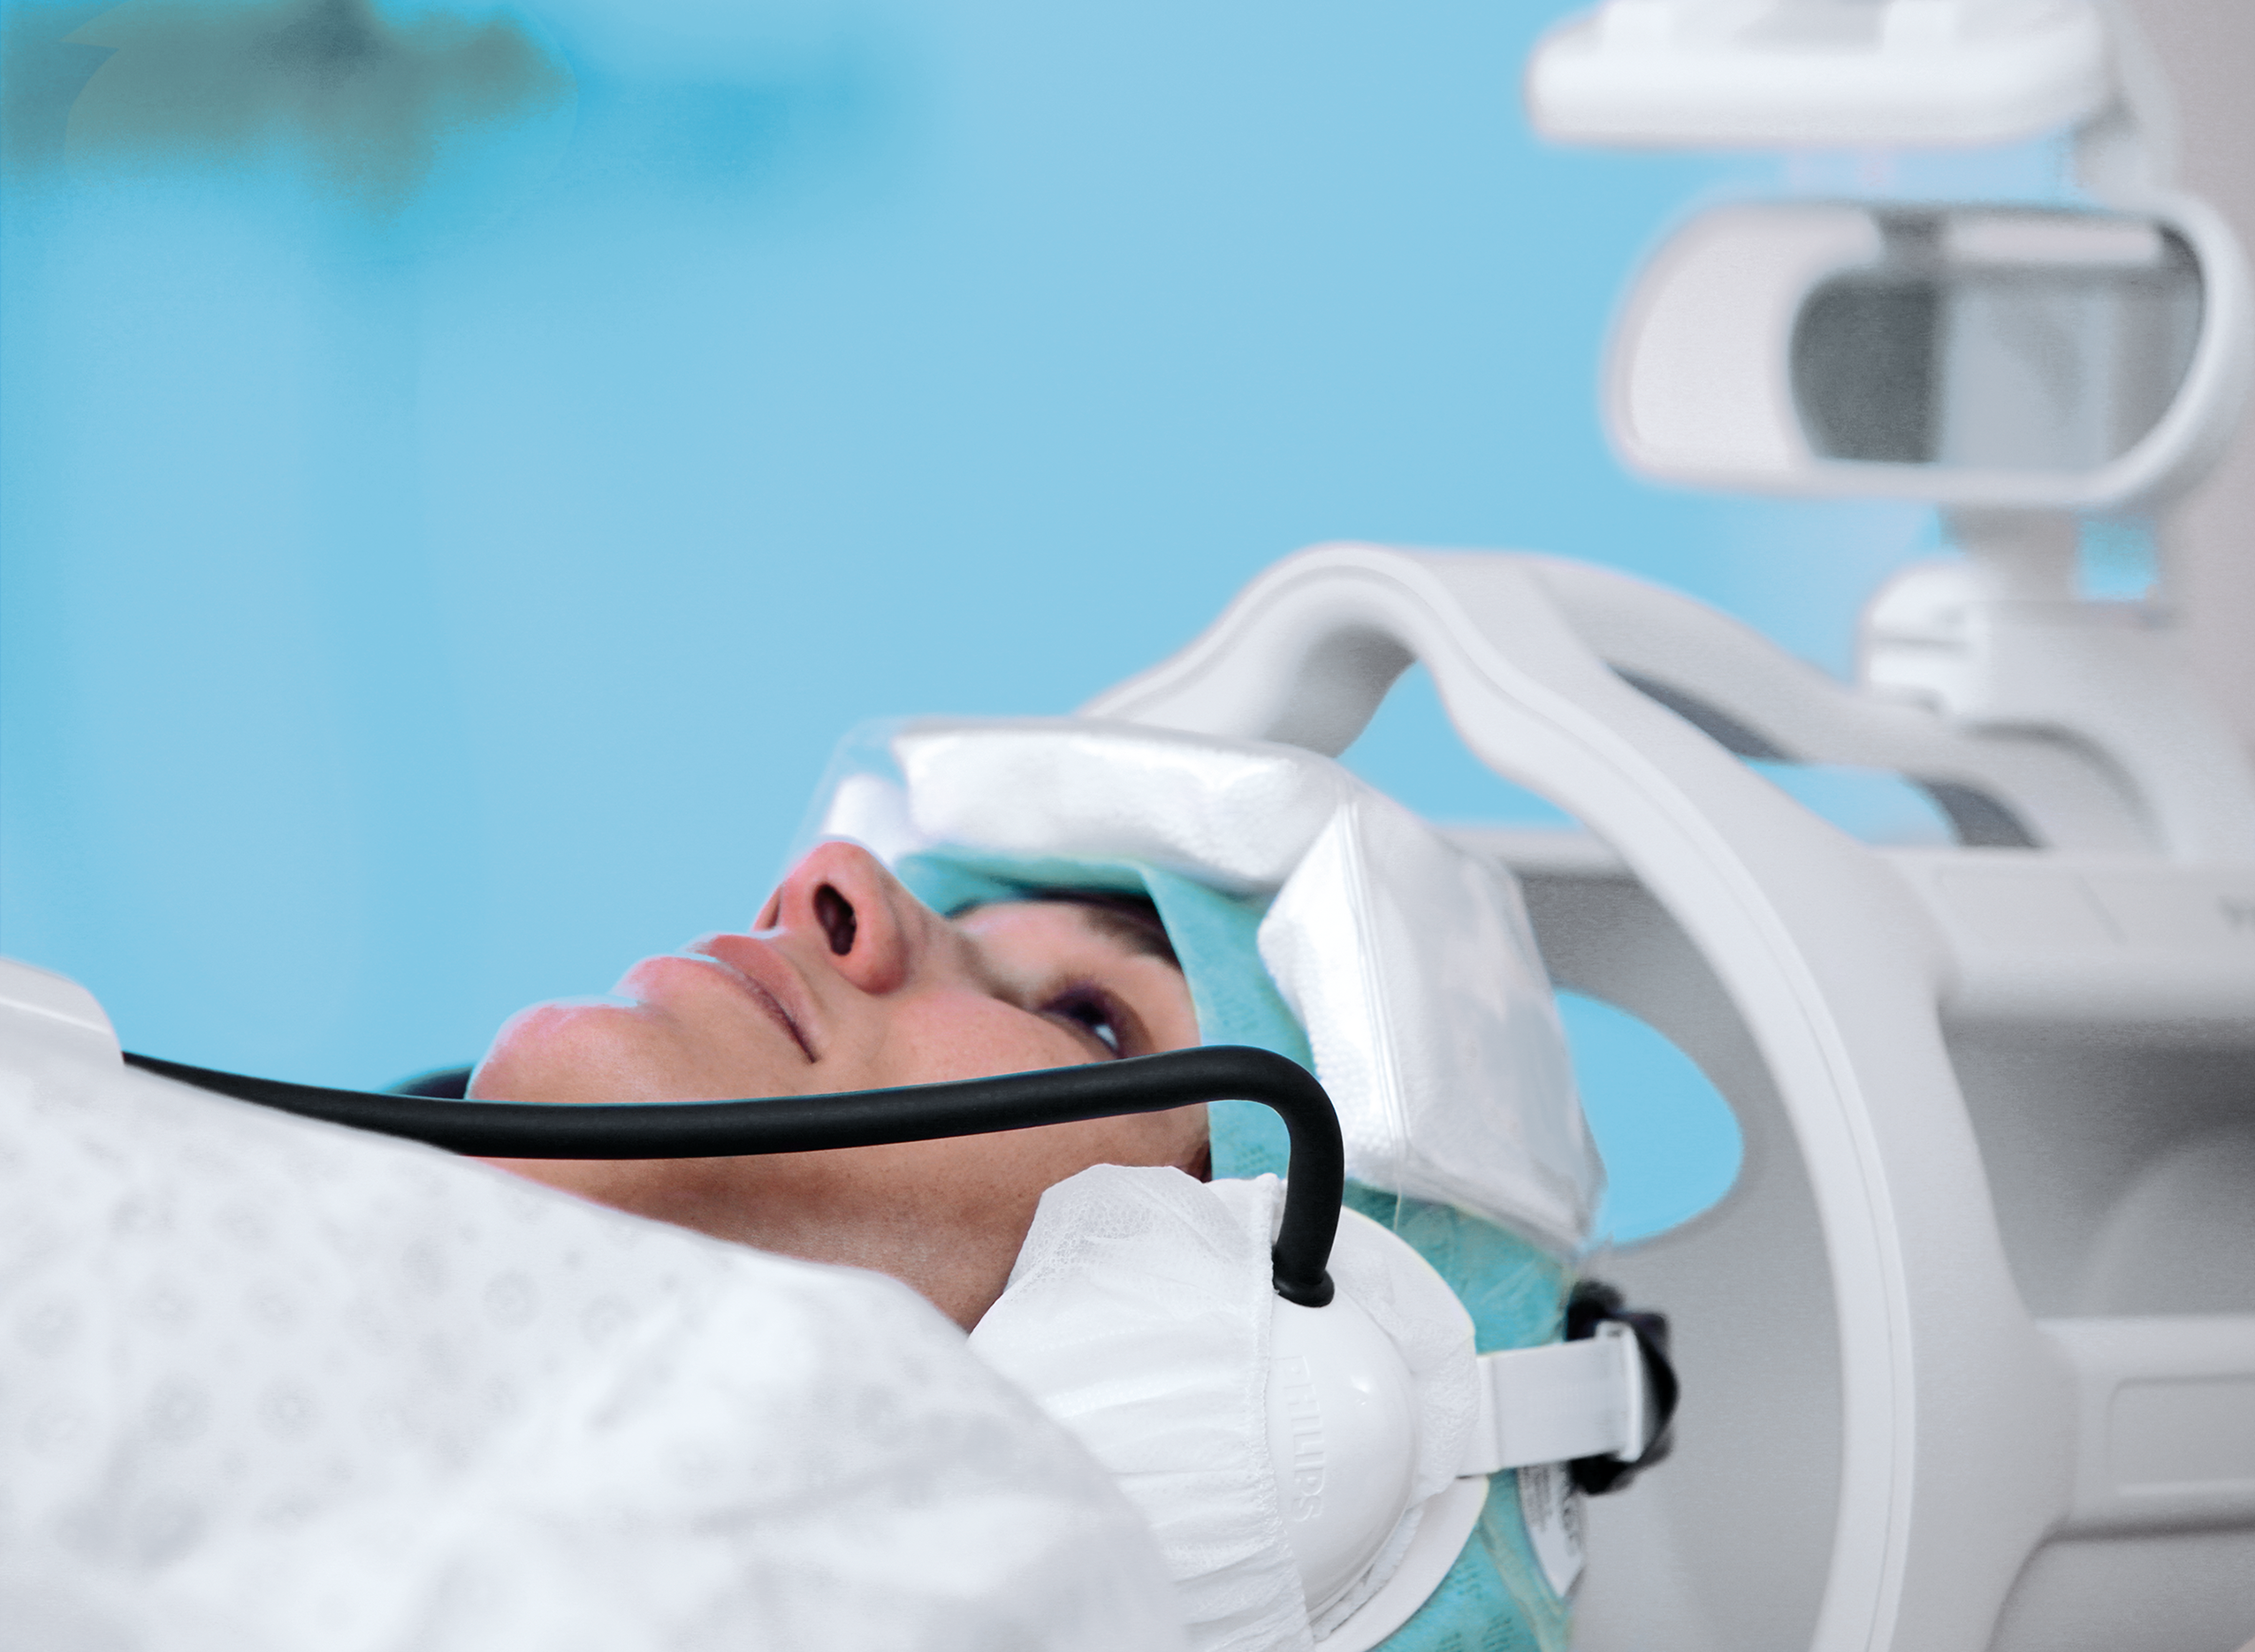 Head immobilized in MRI head coil using Crania